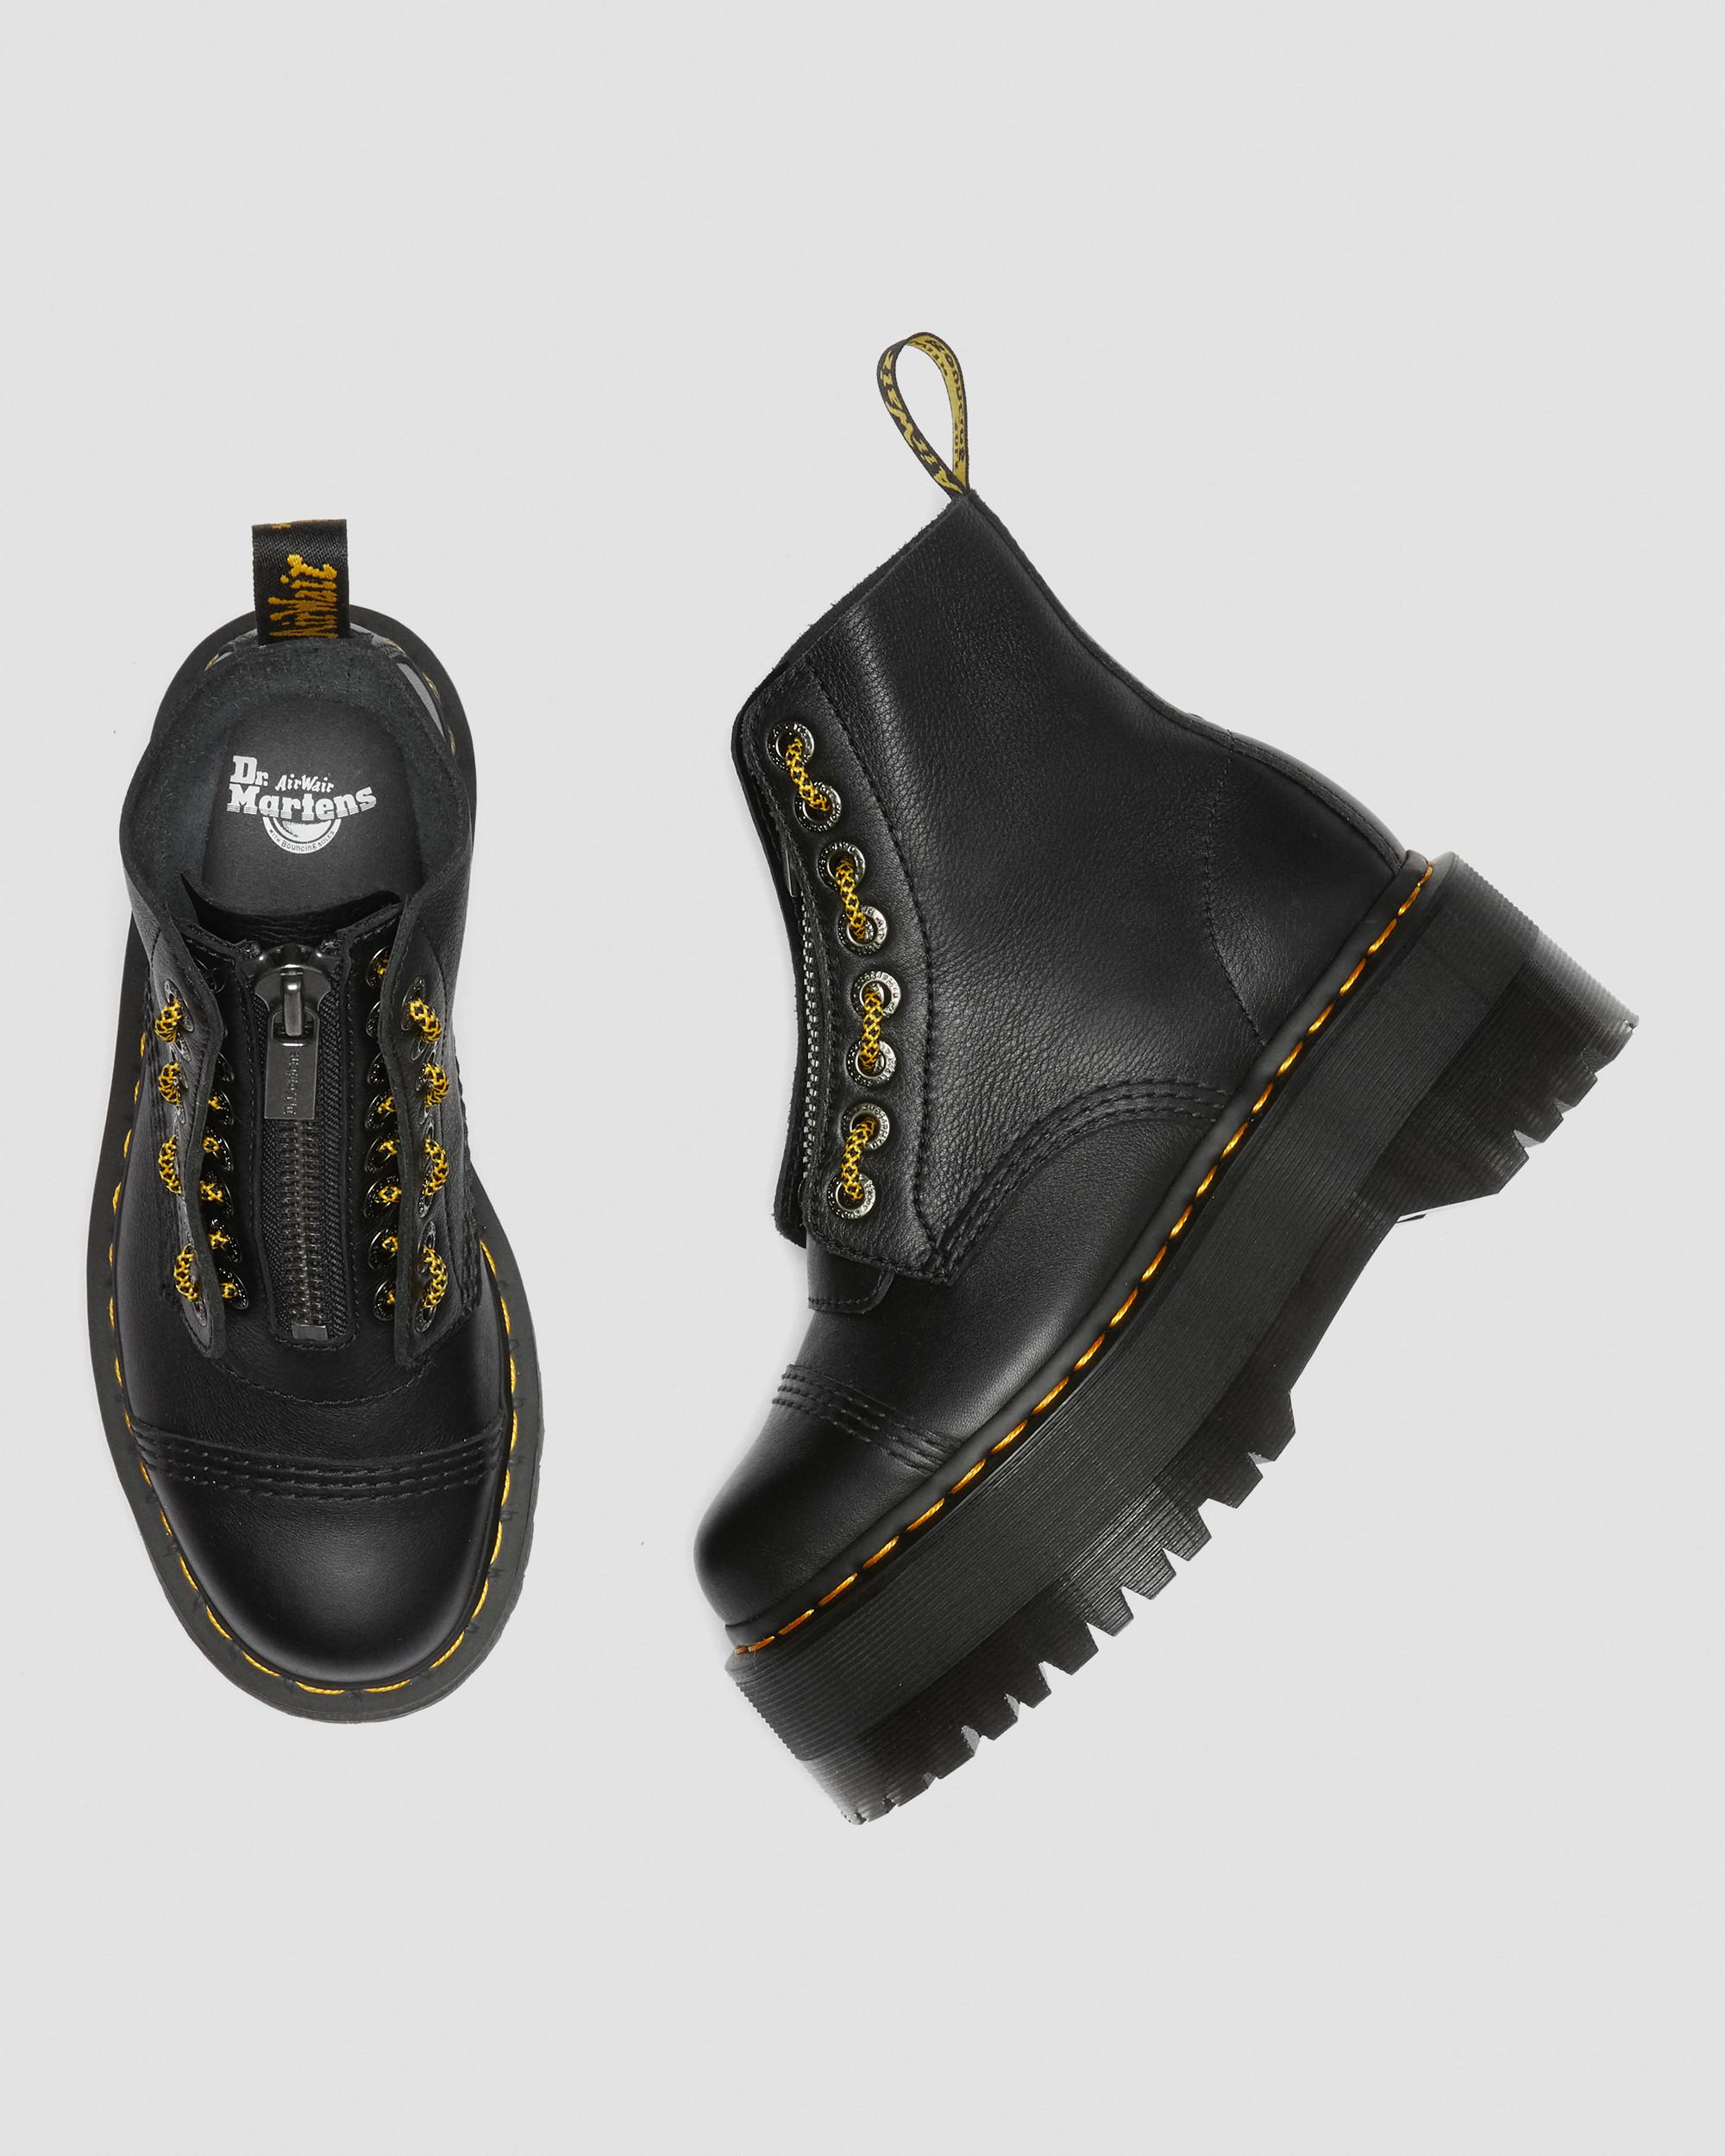 Dr. Martens Sinclair White Leather Platform boots womens size 8 Eu